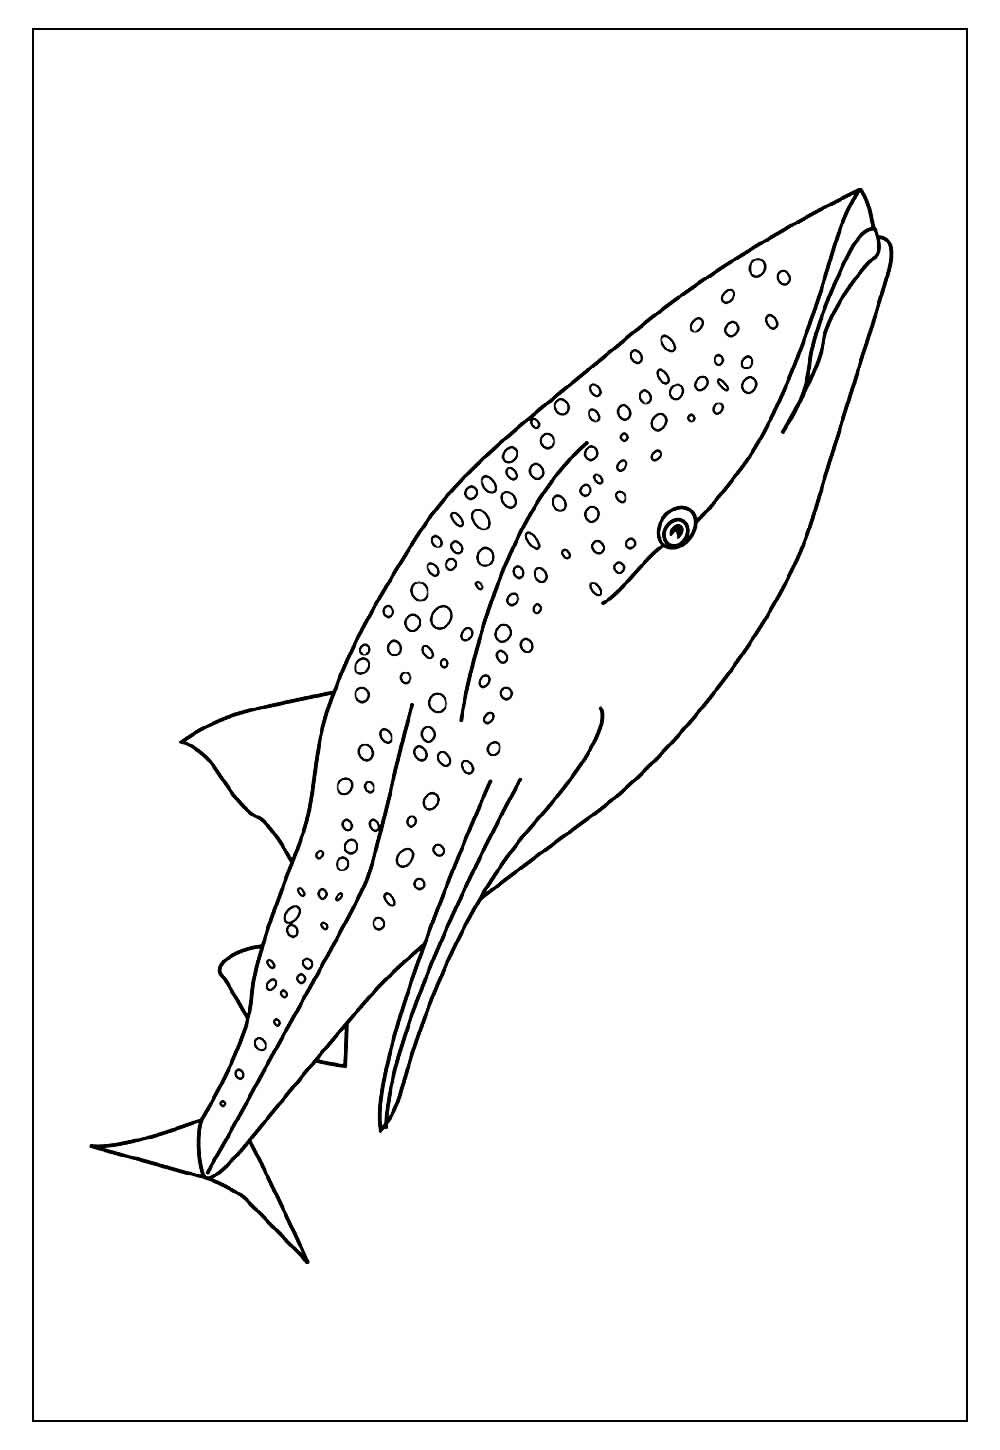 Desenho para colorir de Baleia